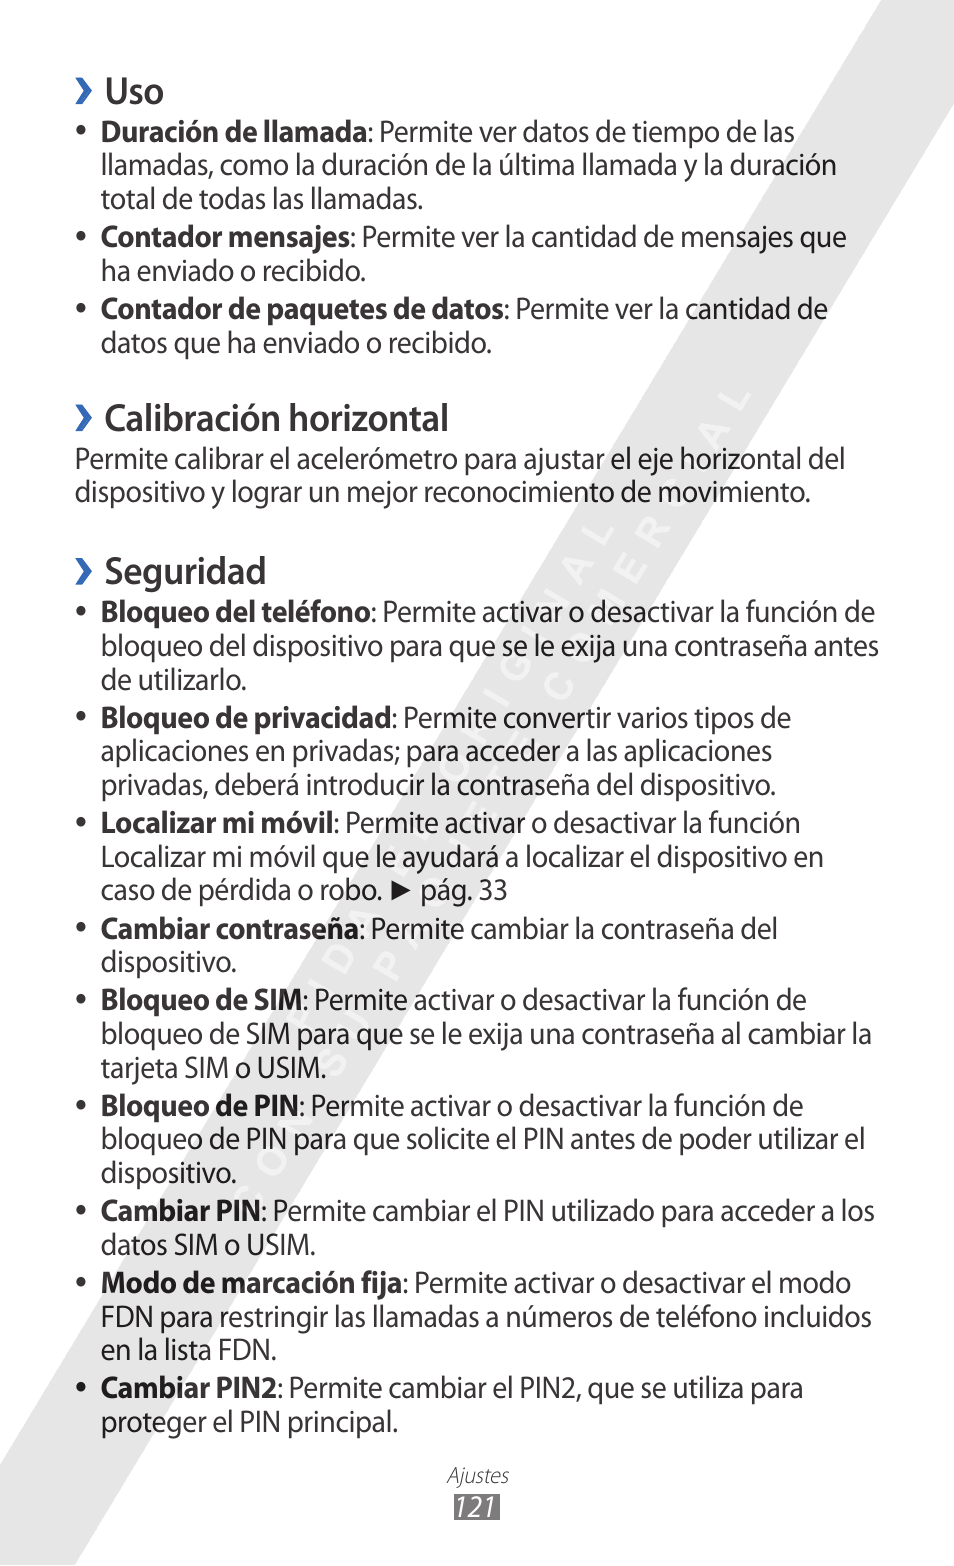 Calibración horizontal, Seguridad | Samsung GT-S8600 Manual del usuario | Página 121 / 154